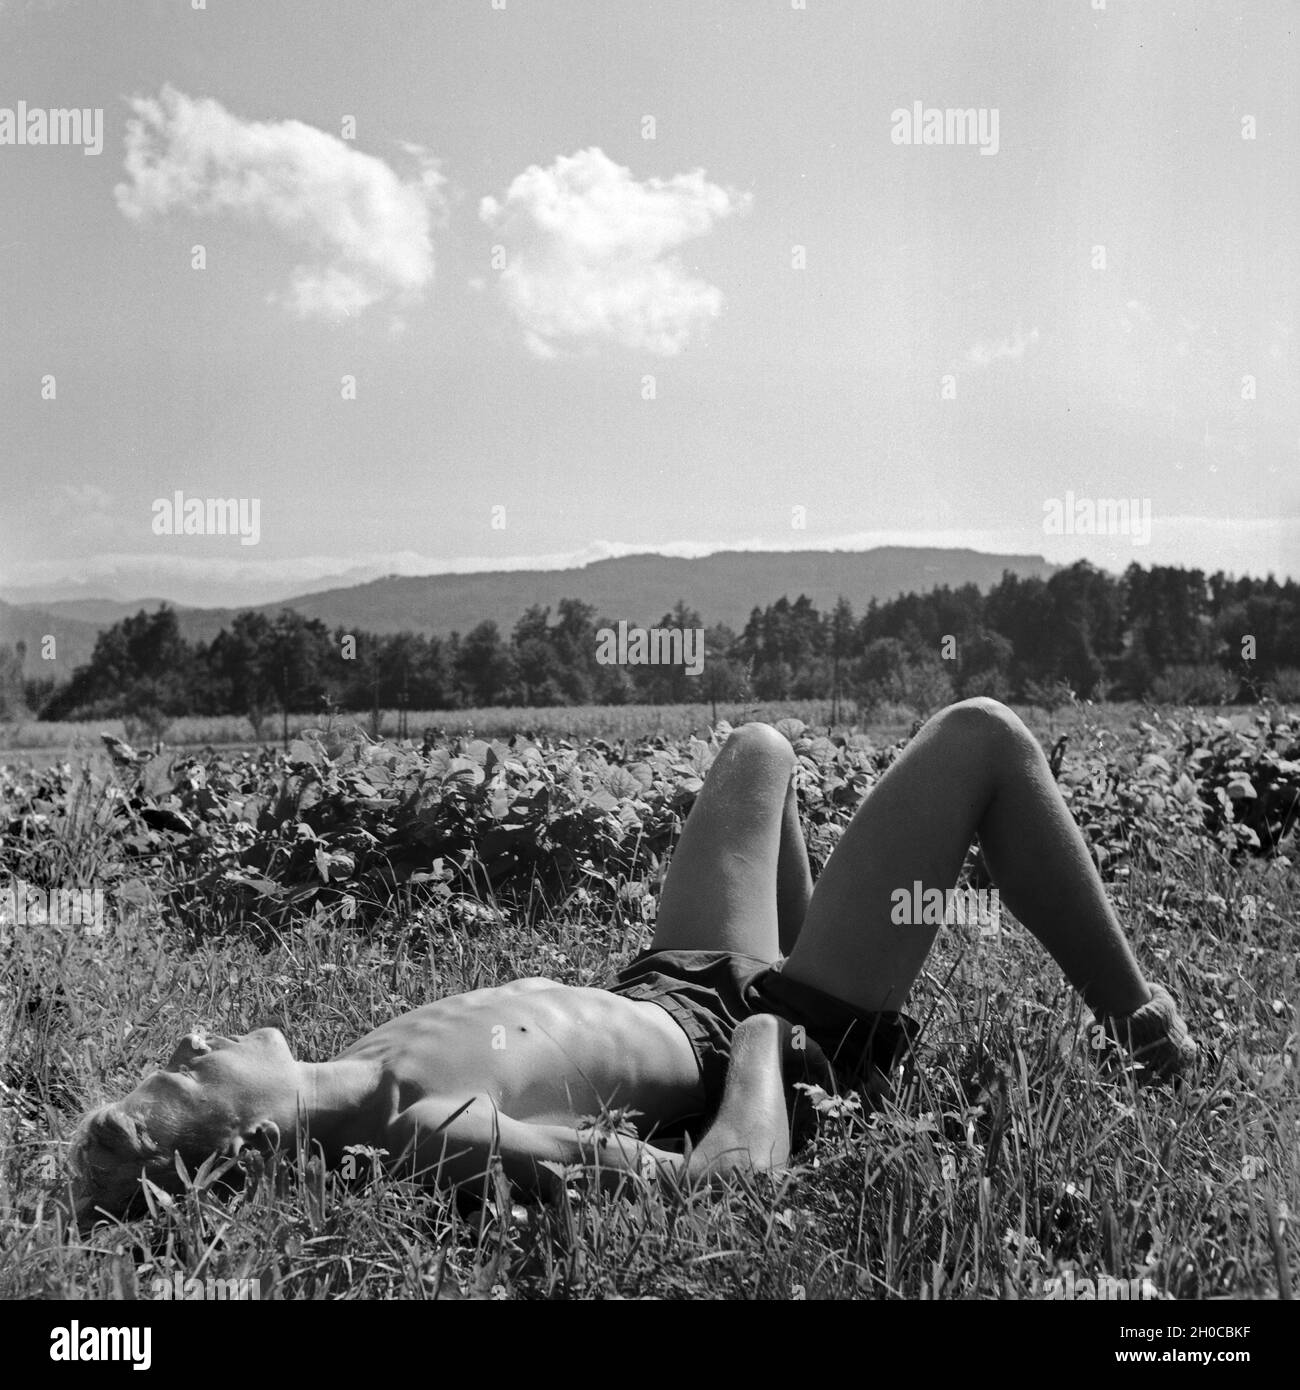 Erschöpfter Hitlerjunge liegt in einer Wiese, Österreich 1930er Jahre. Exhausted Hitler youth boy lying on a lawn, taking a nap, Austria 1930s. Stock Photo